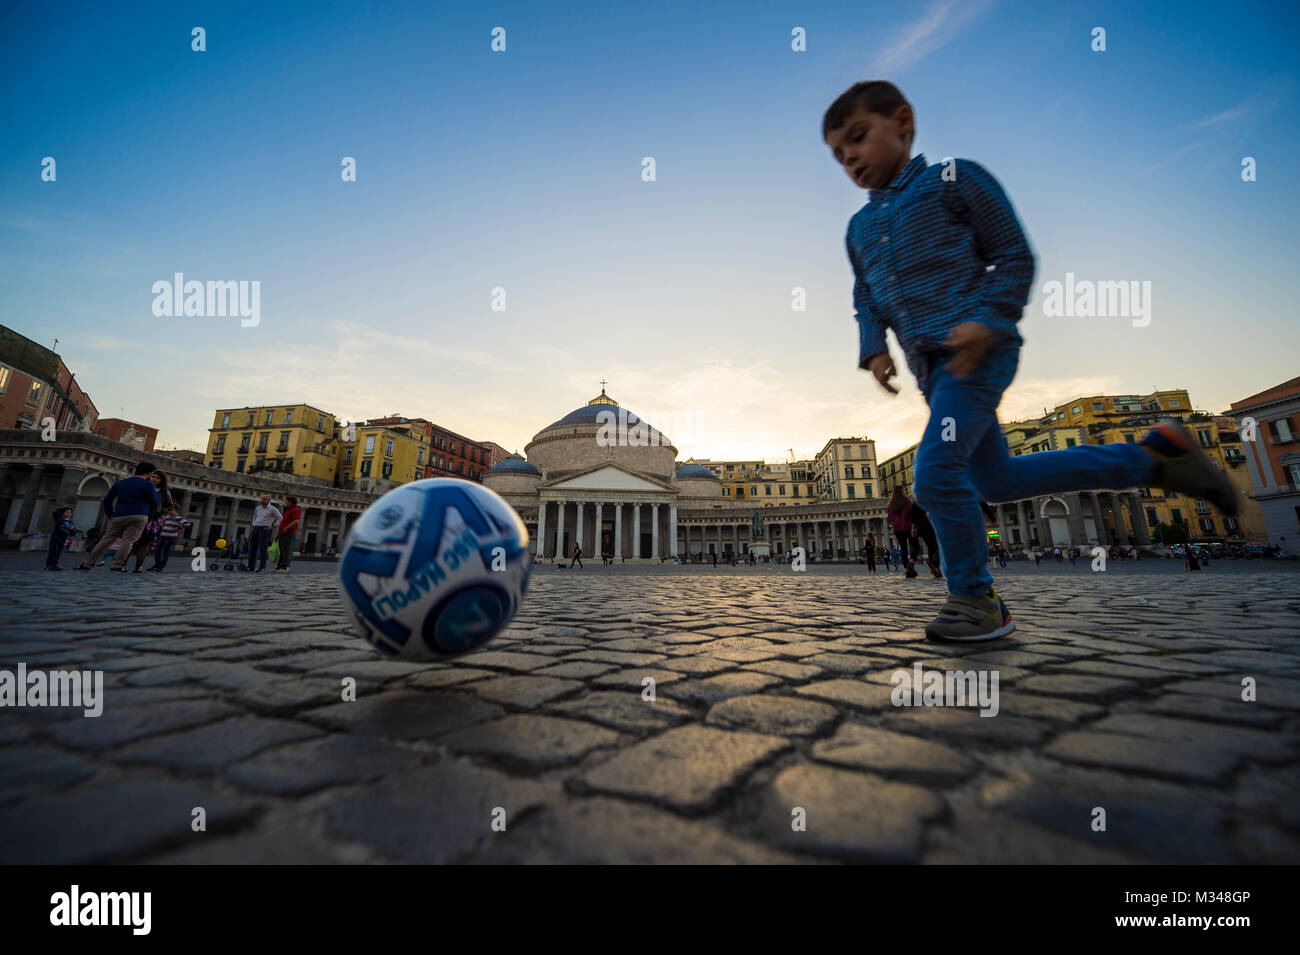 Napoli, Italia - circa ottobre 2017, giovane ragazzo giocando a calcio con motion blur sulla pavimentazione della piazza. Foto Stock